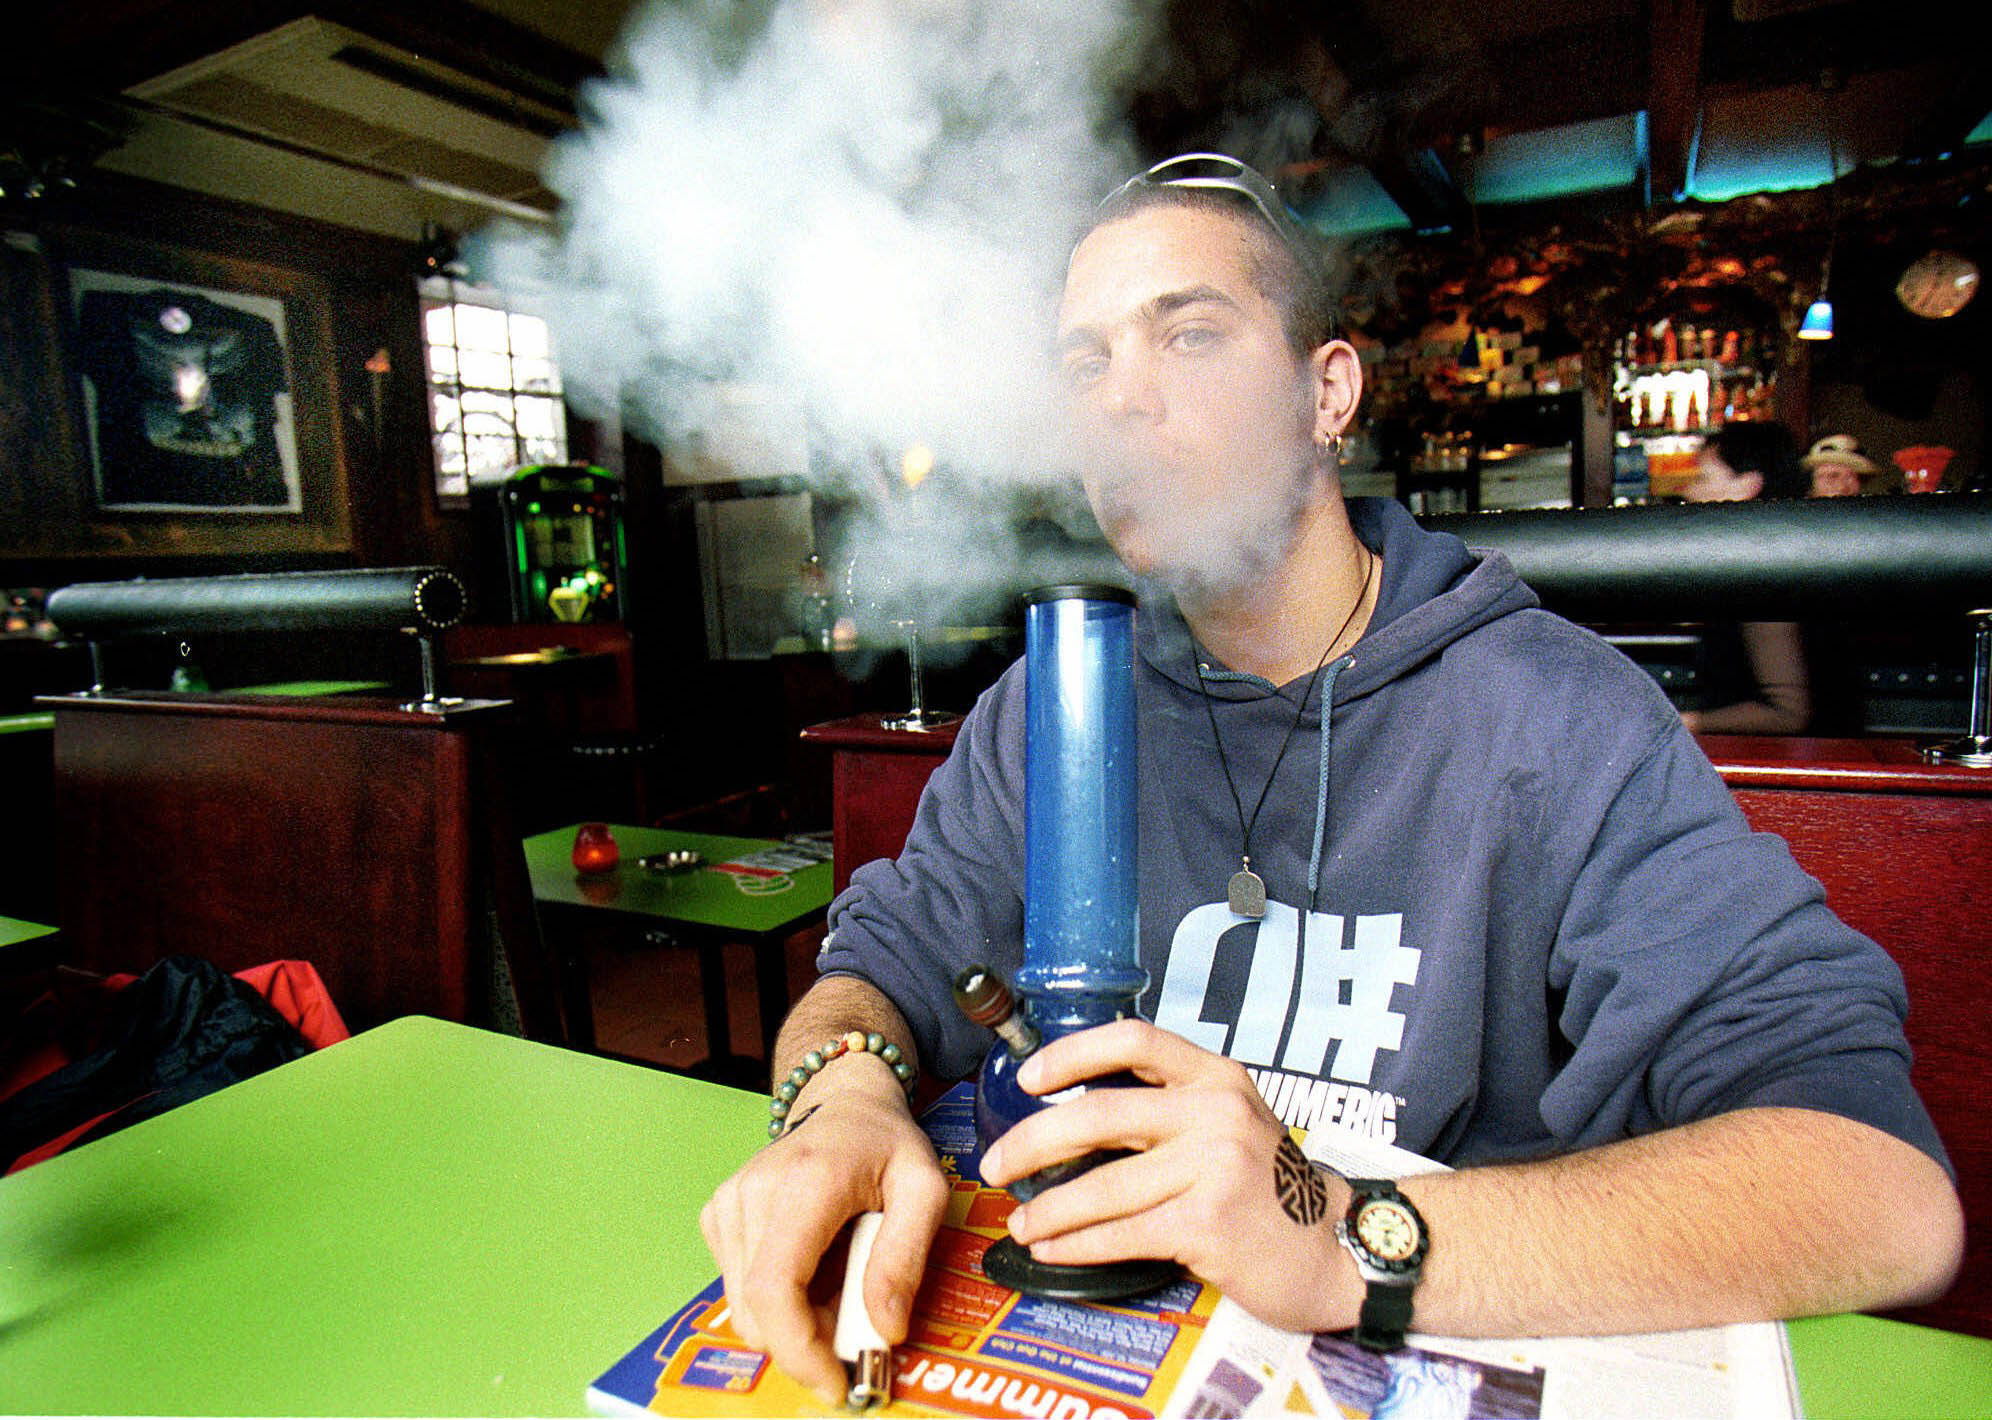 En australiensisk turist röker marijuana ur en vattenpipa på ett kafé i Amsterdam.